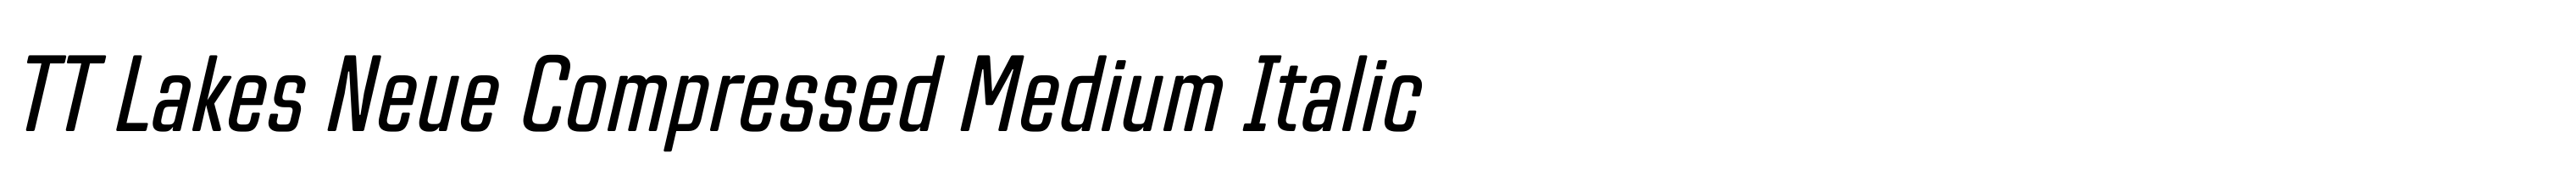 TT Lakes Neue Compressed Medium Italic